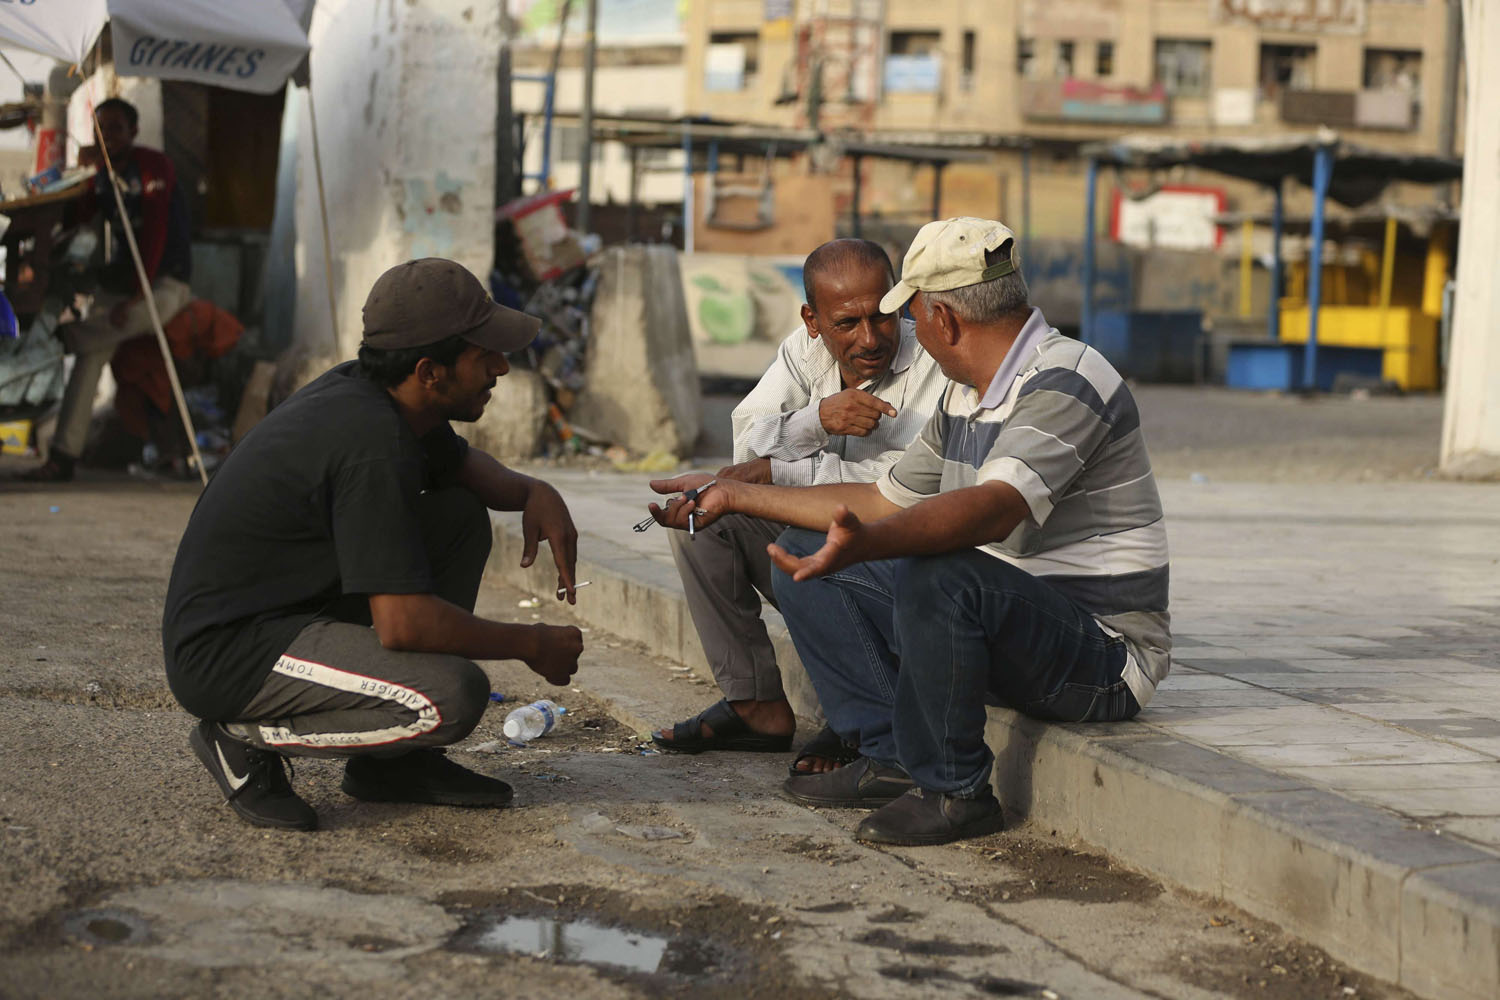 بناءون عراقيون يجلسون في انتظار فرصة عمل